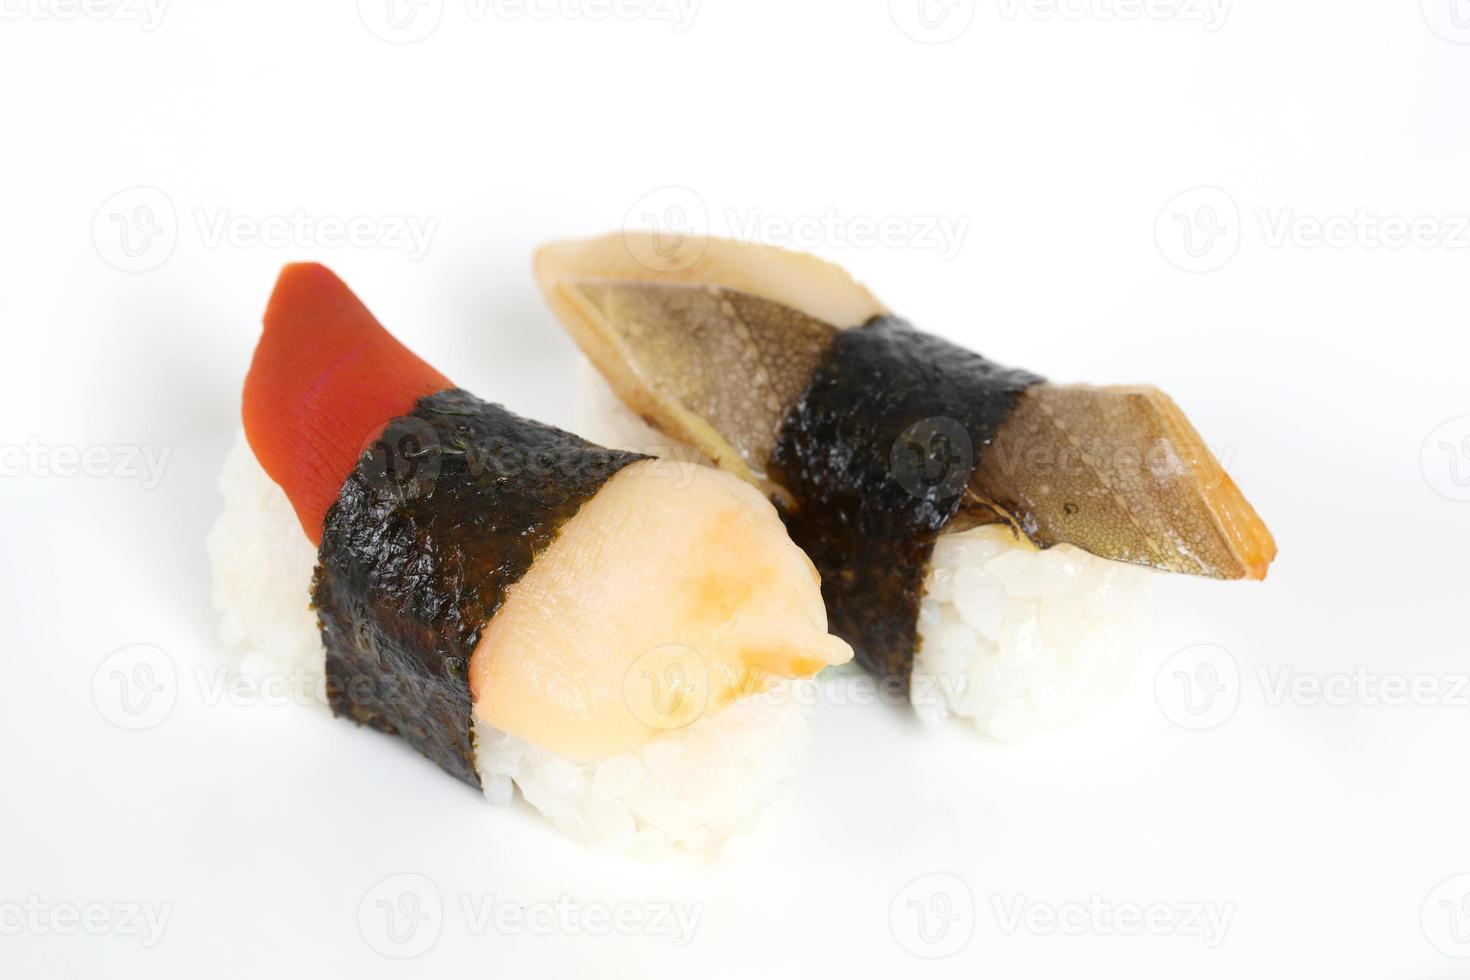 leckeres japanisches Essen foto